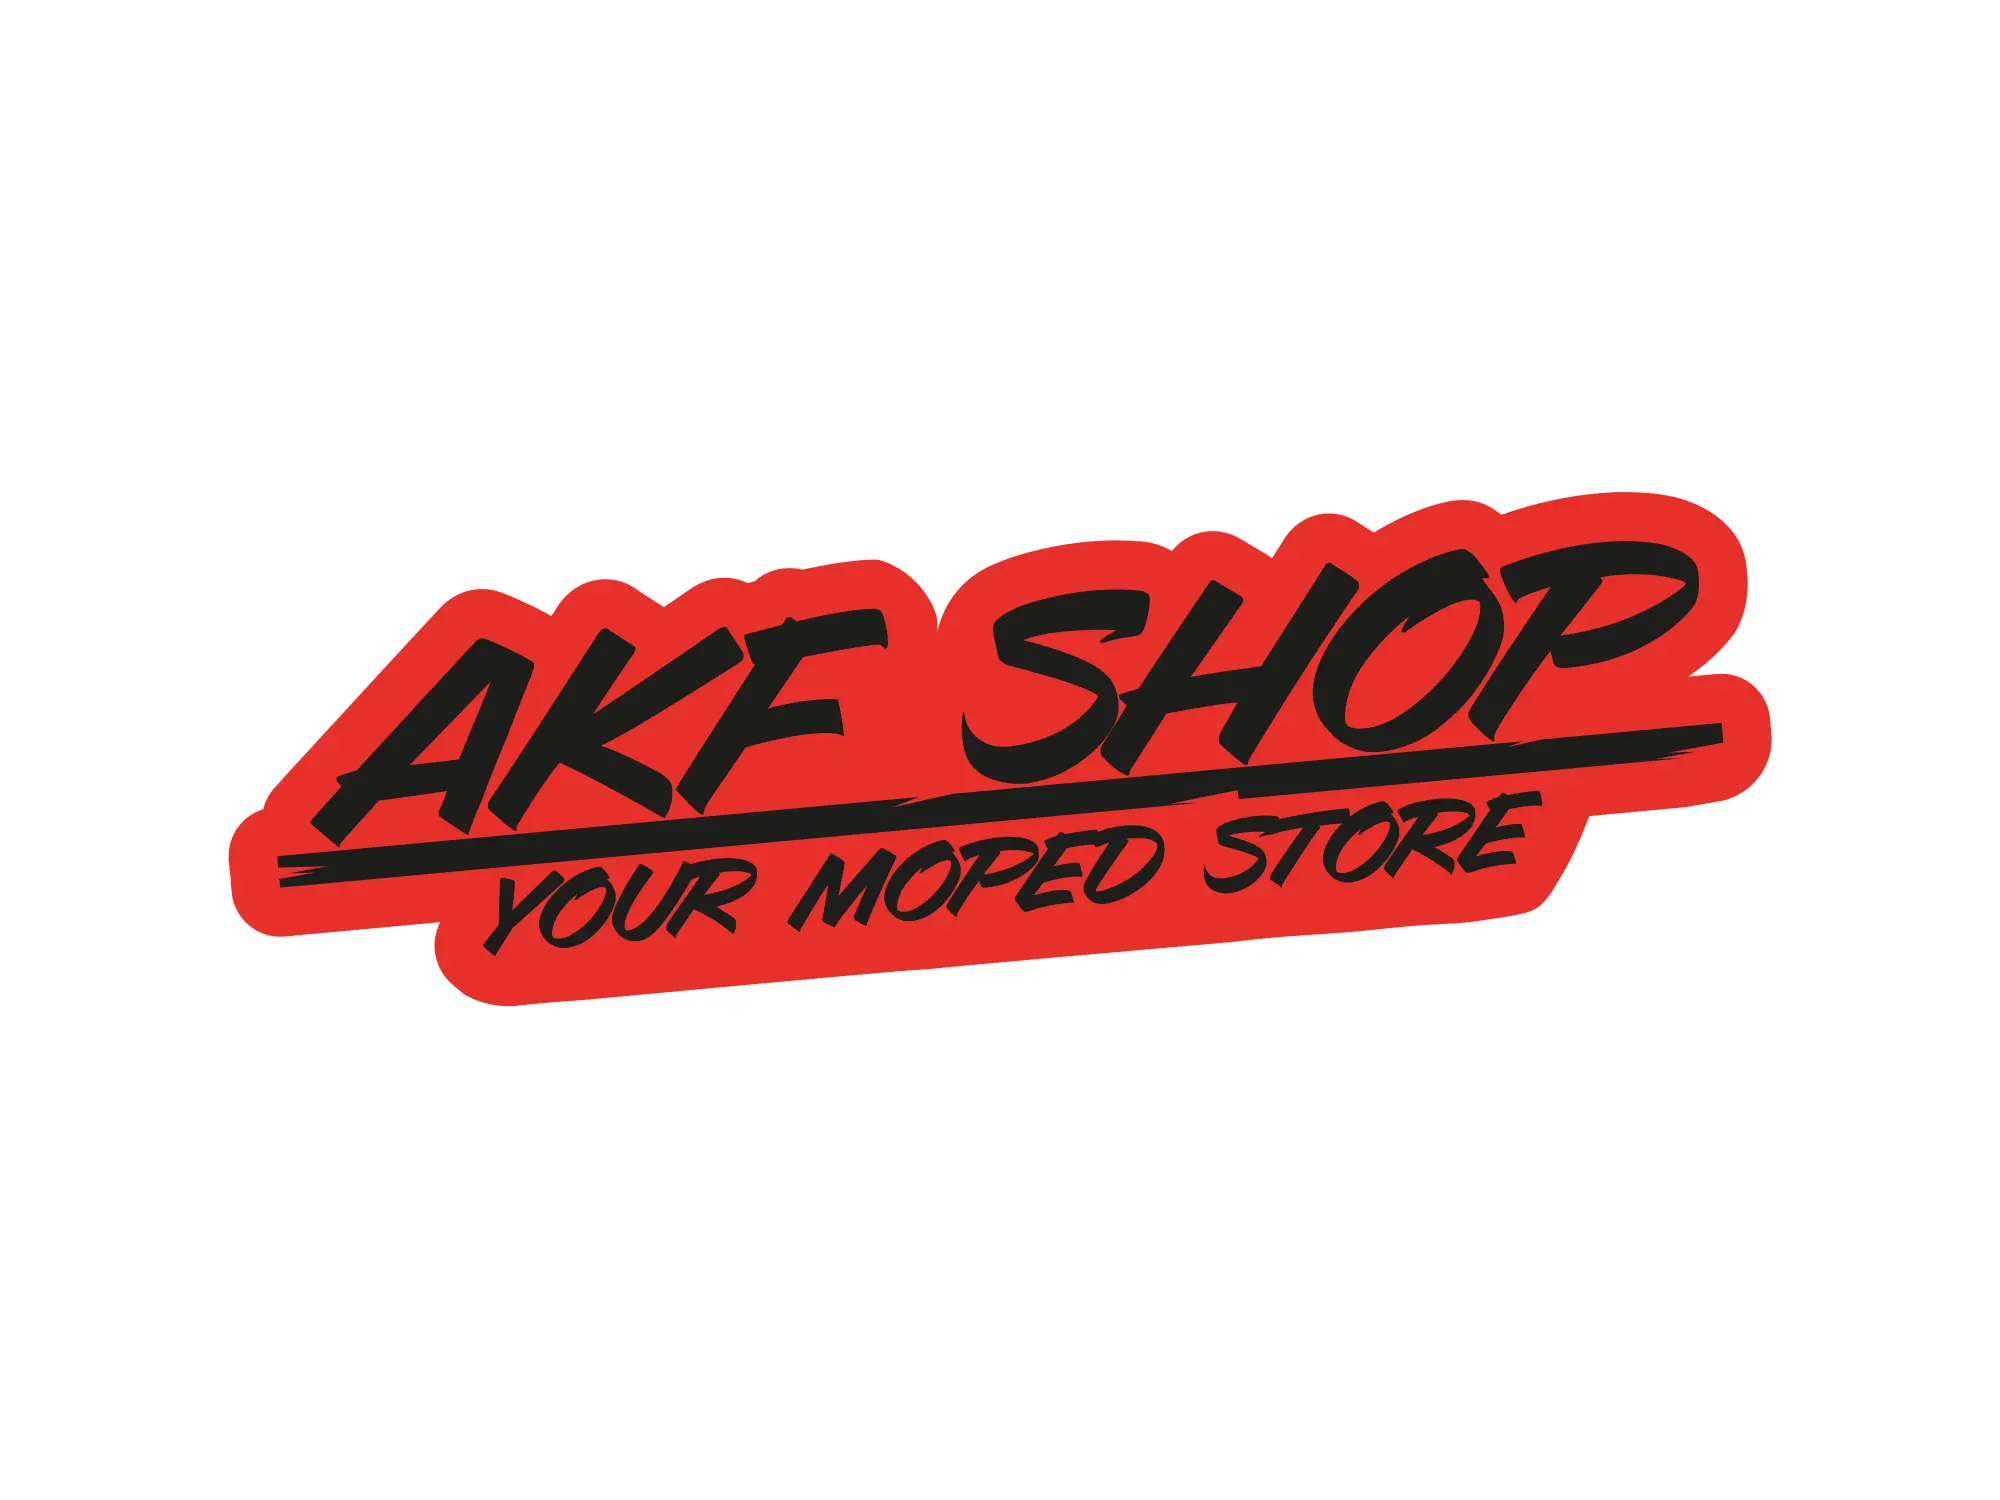 Aufkleber - "AKF Shop - your moped store" Rot/Schwarz, konturgeschnitten, Art.-Nr.: 10070128 - Bild 1